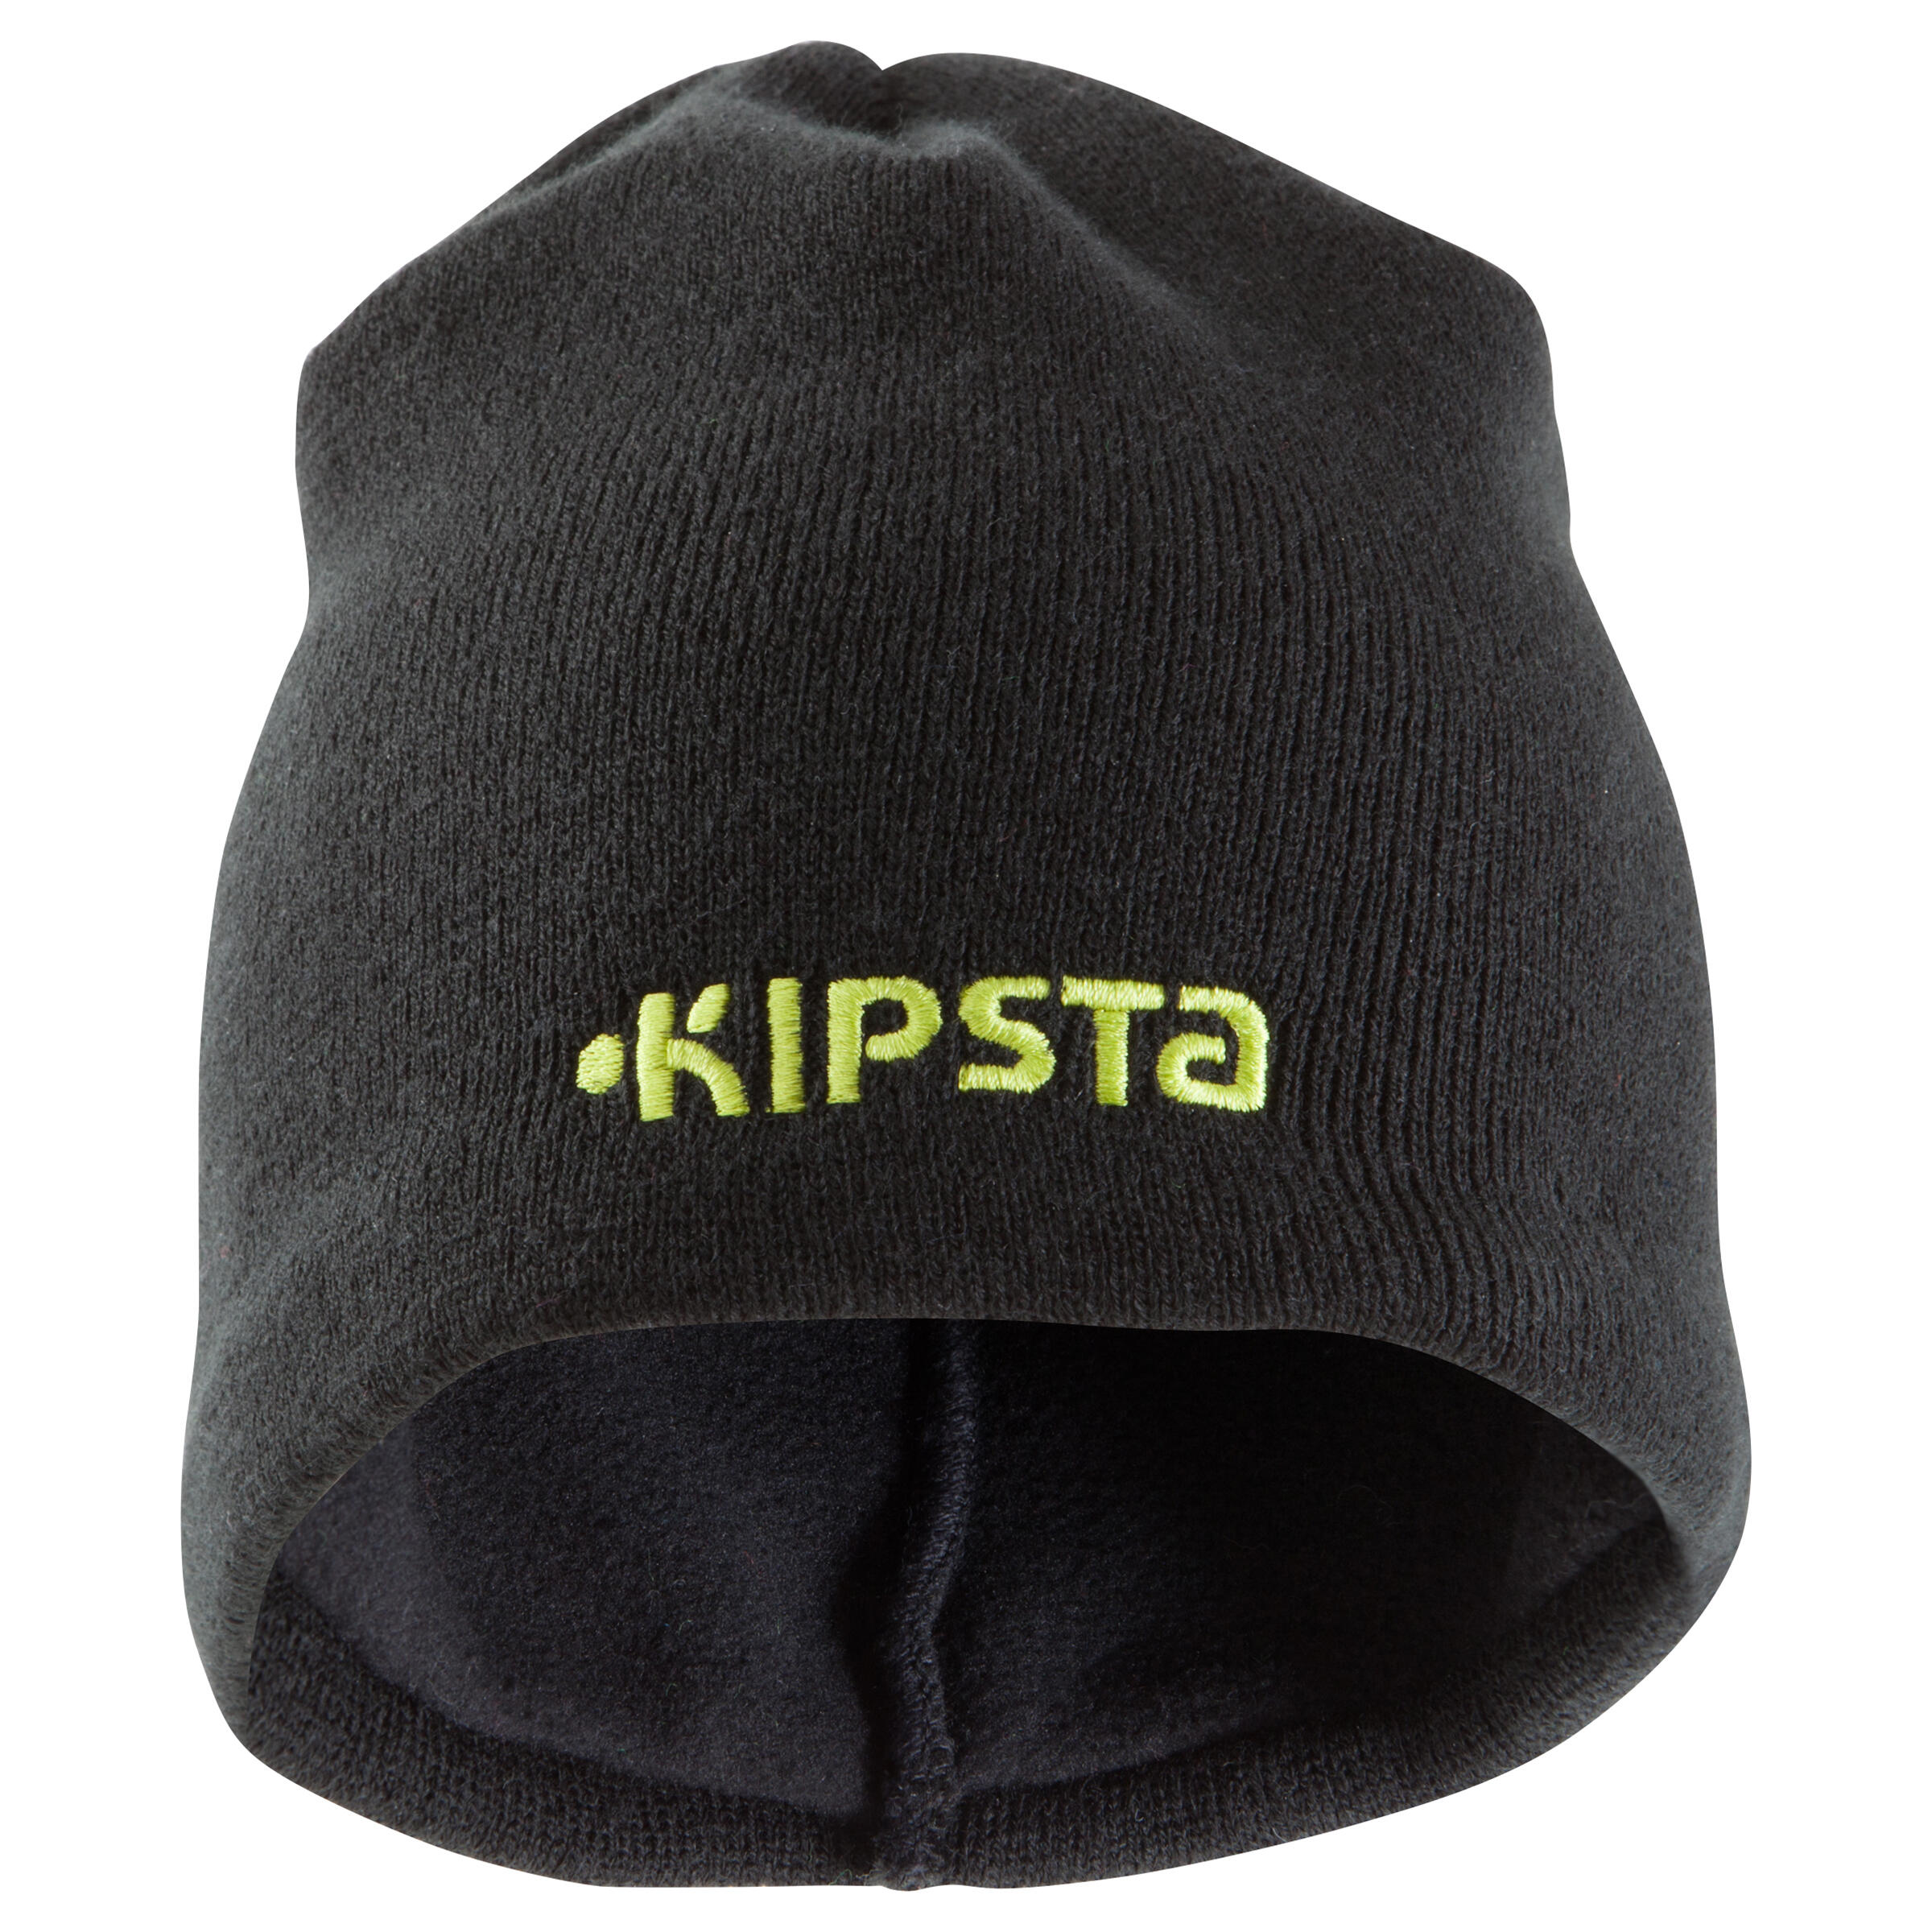 Keepwarm Kids' Fleece-Lined Hat - Black 2/8